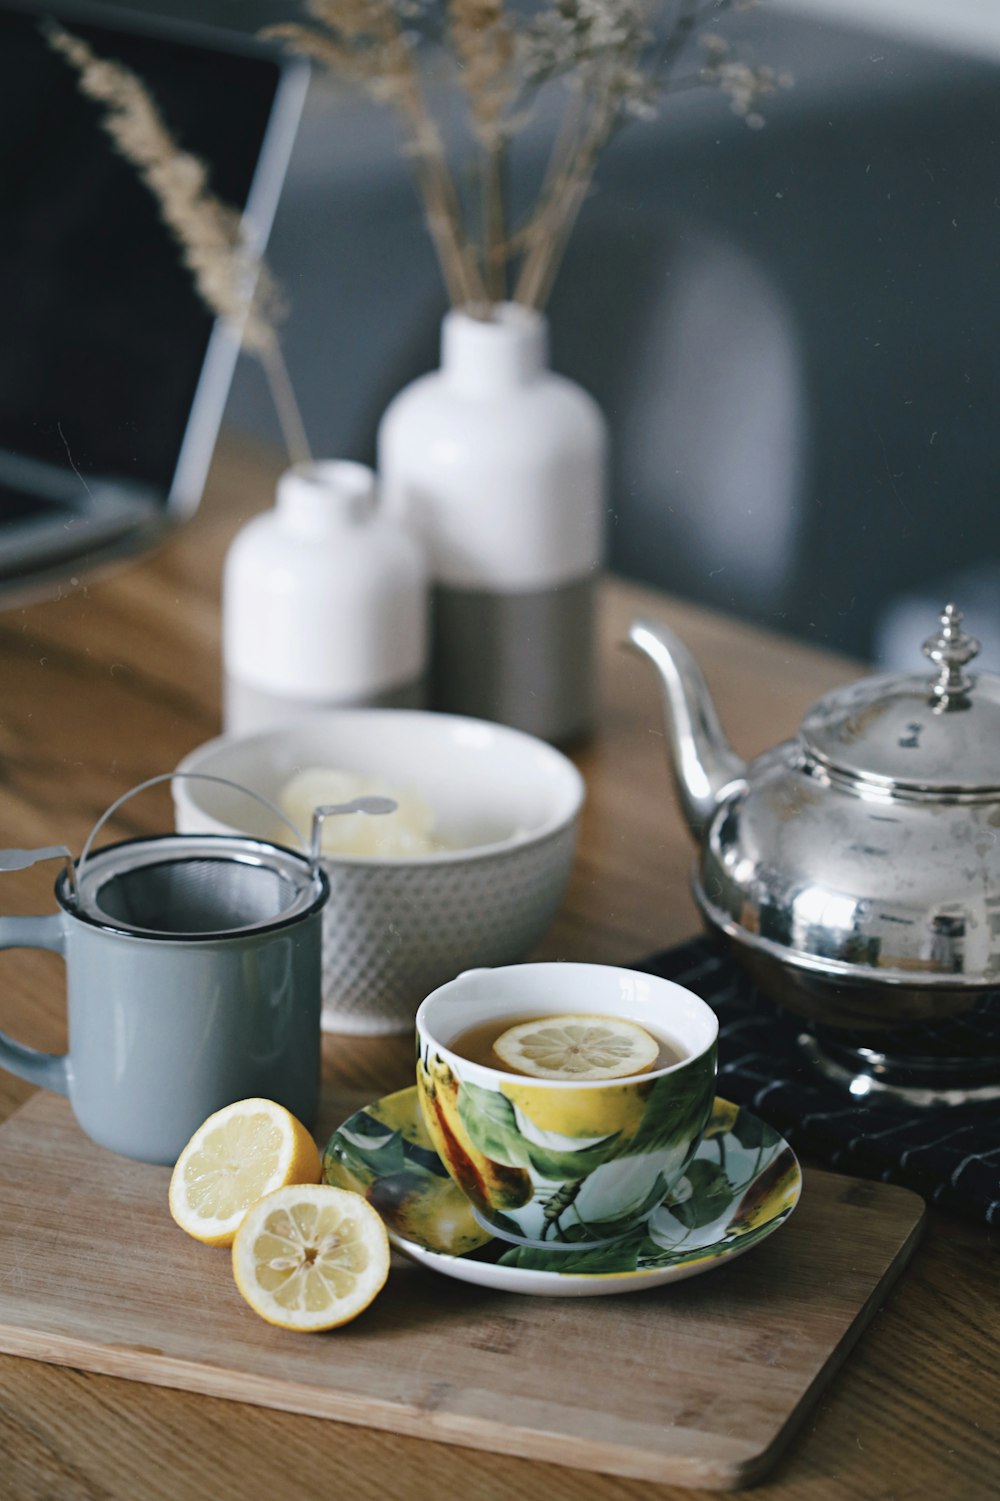 théière grise à côté d’une tasse remplie de thé et de citron sur le dessus de la table